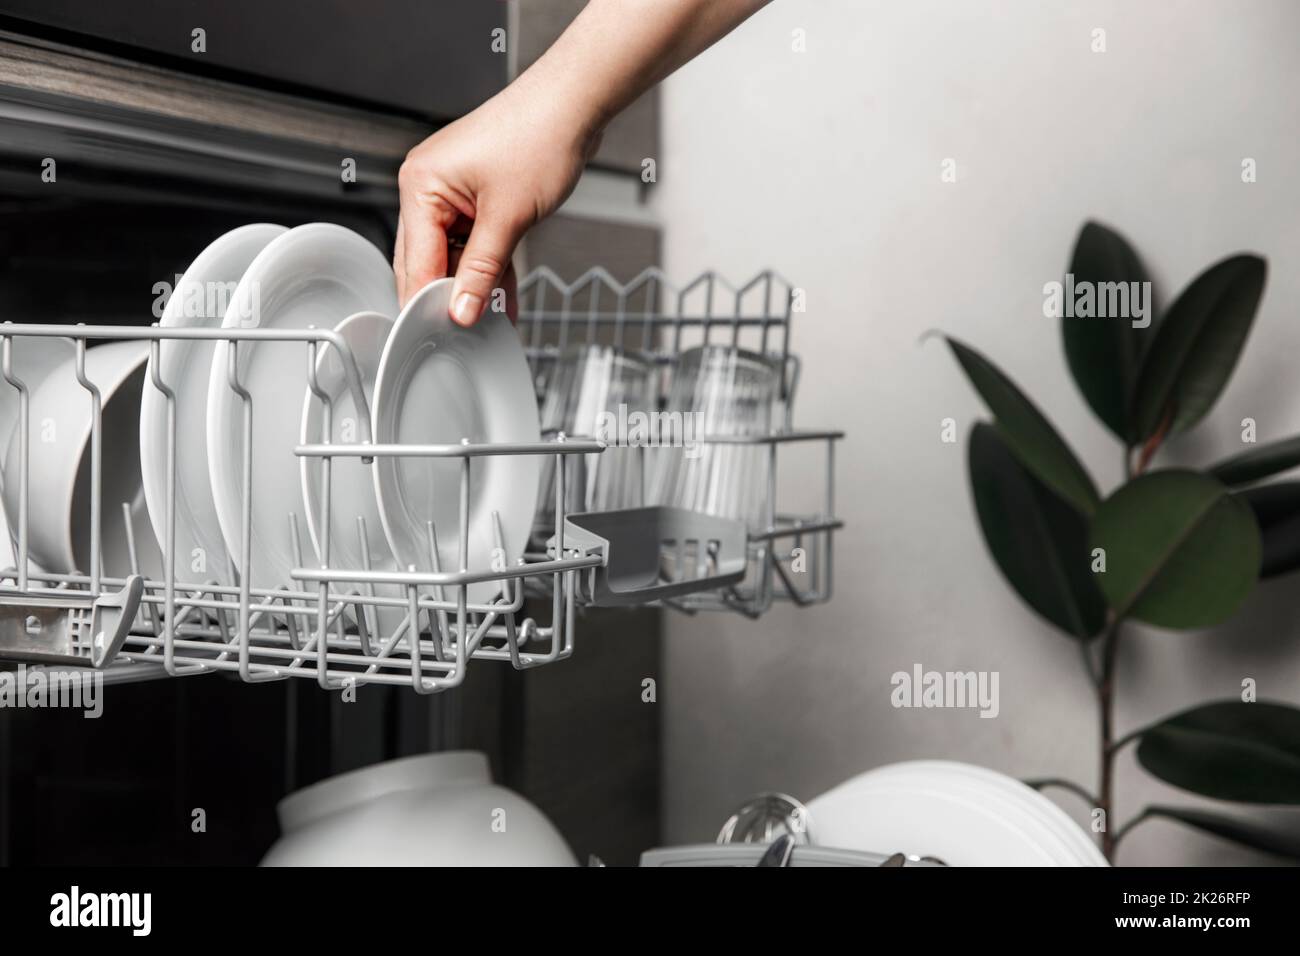 Lavastoviglie aperta con posate pulite, bicchieri, piatti all'interno della cucina casalinga Foto Stock